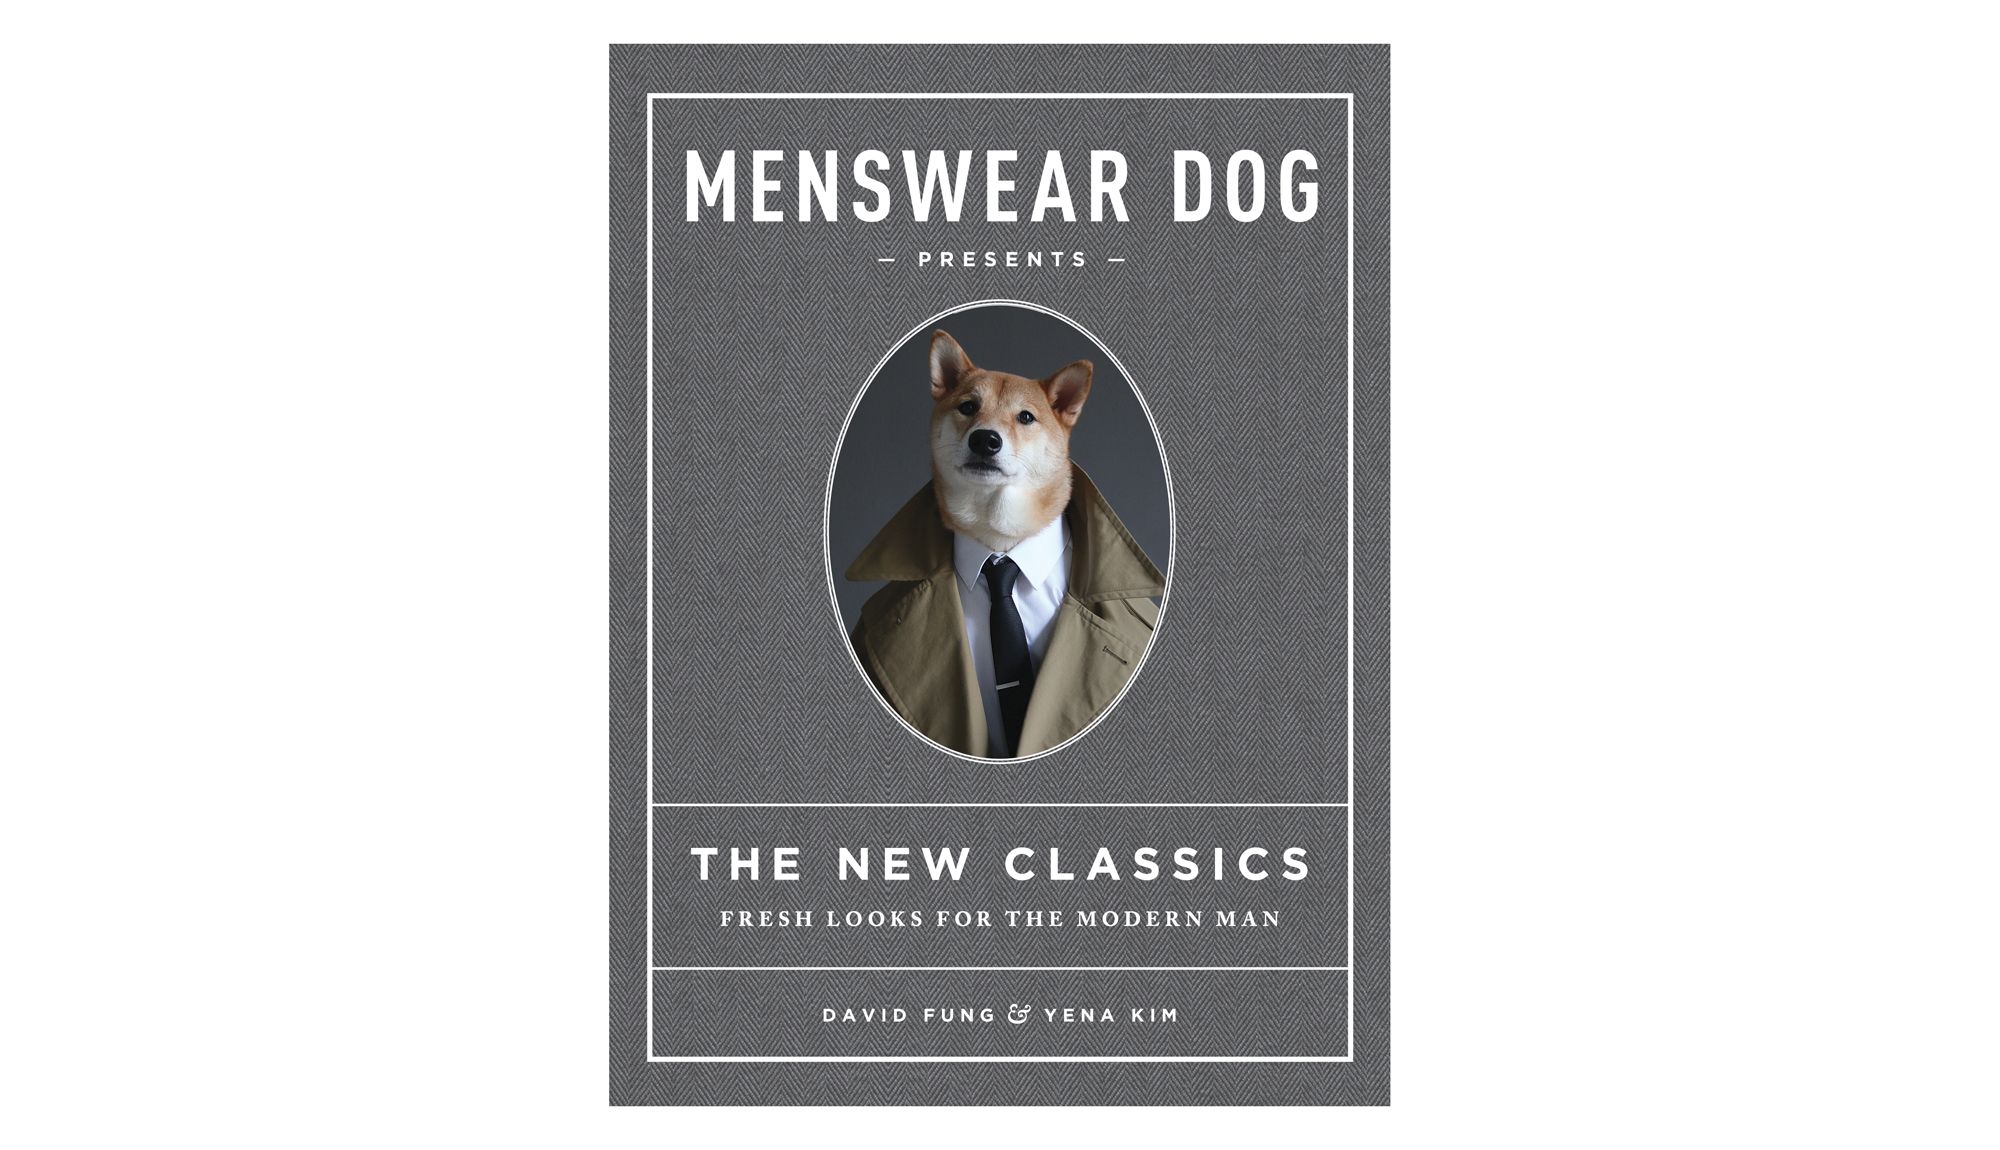 Menswear Dog kynnir nýju sígildin: Fresh Looks for the Modern Man, eftir David Fung og Yena Kim